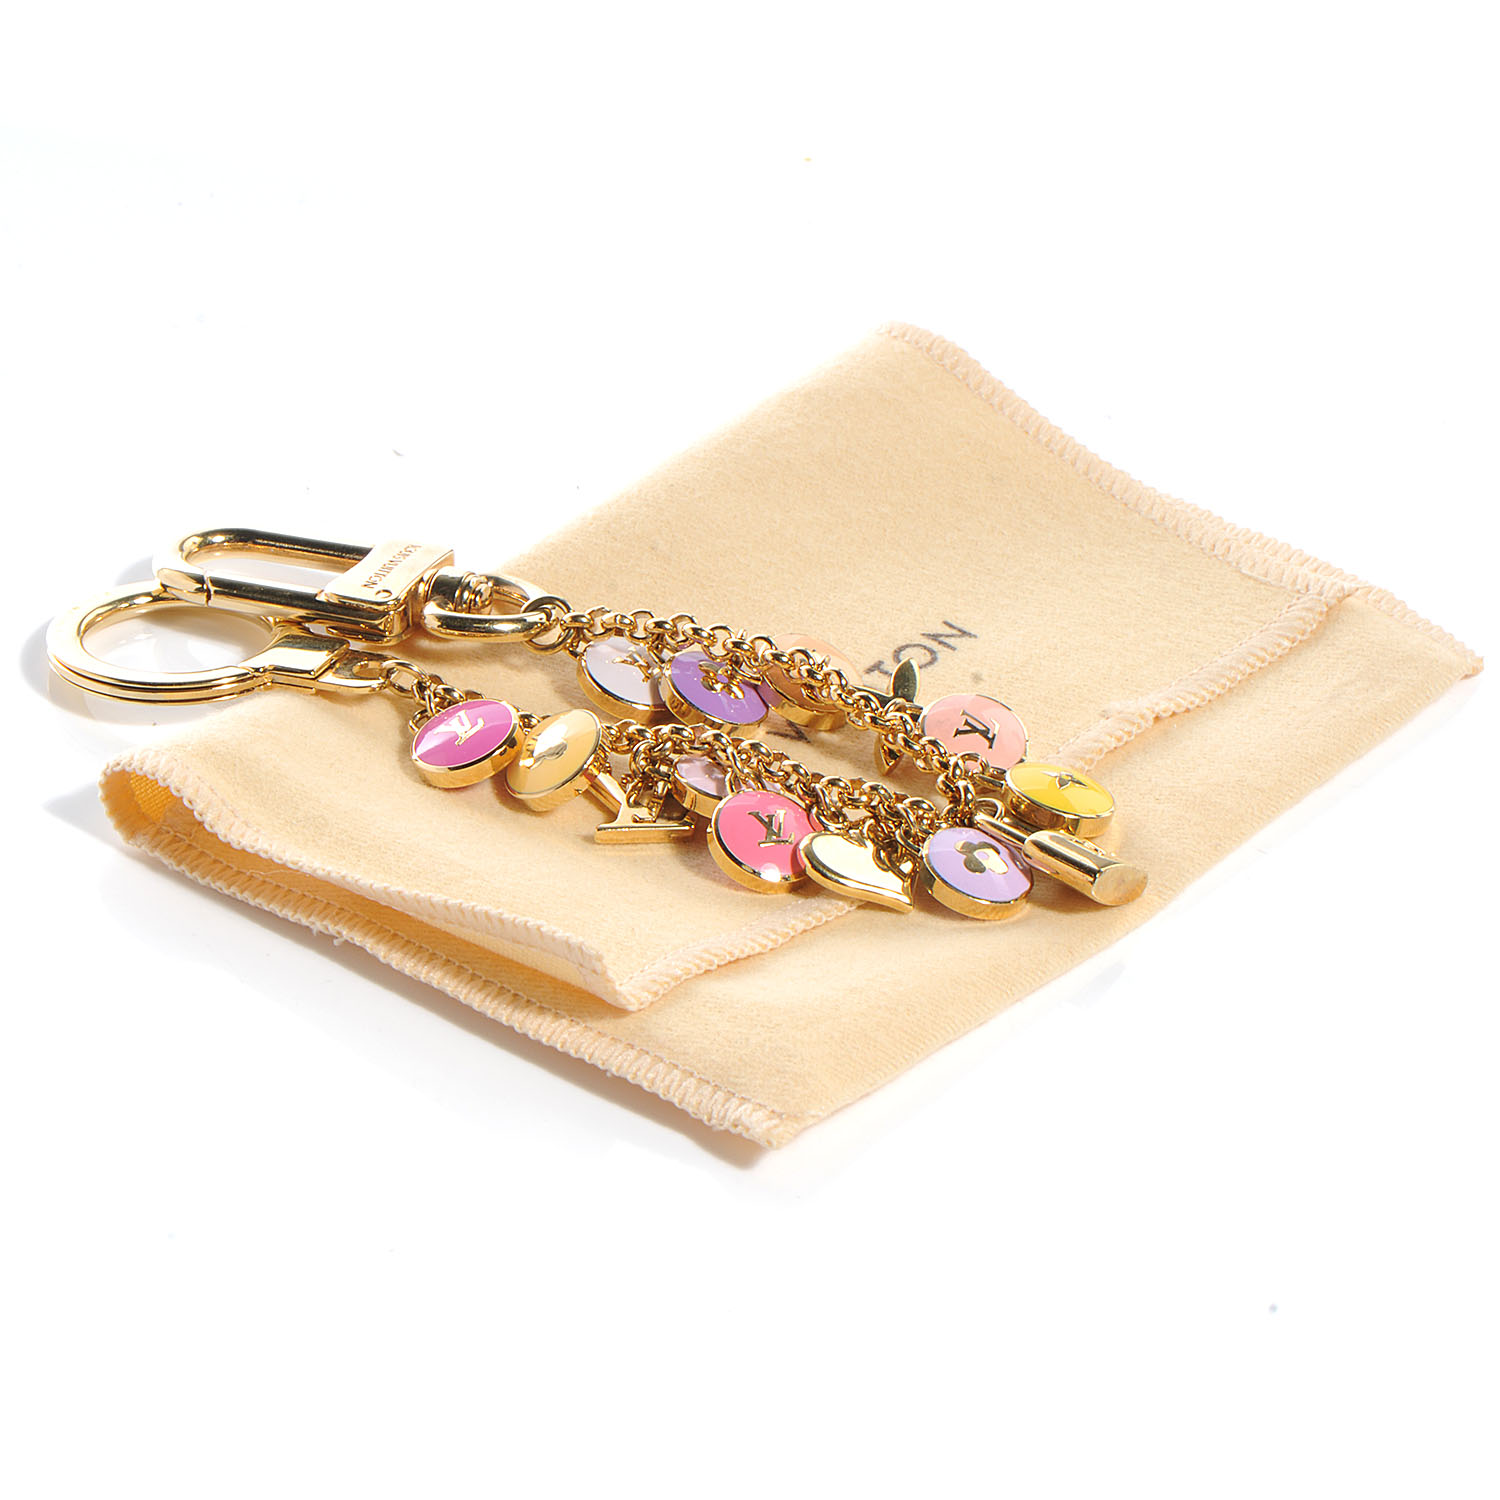 LOUIS VUITTON Pastilles Key Chain Bag Charm Multicolor 53709